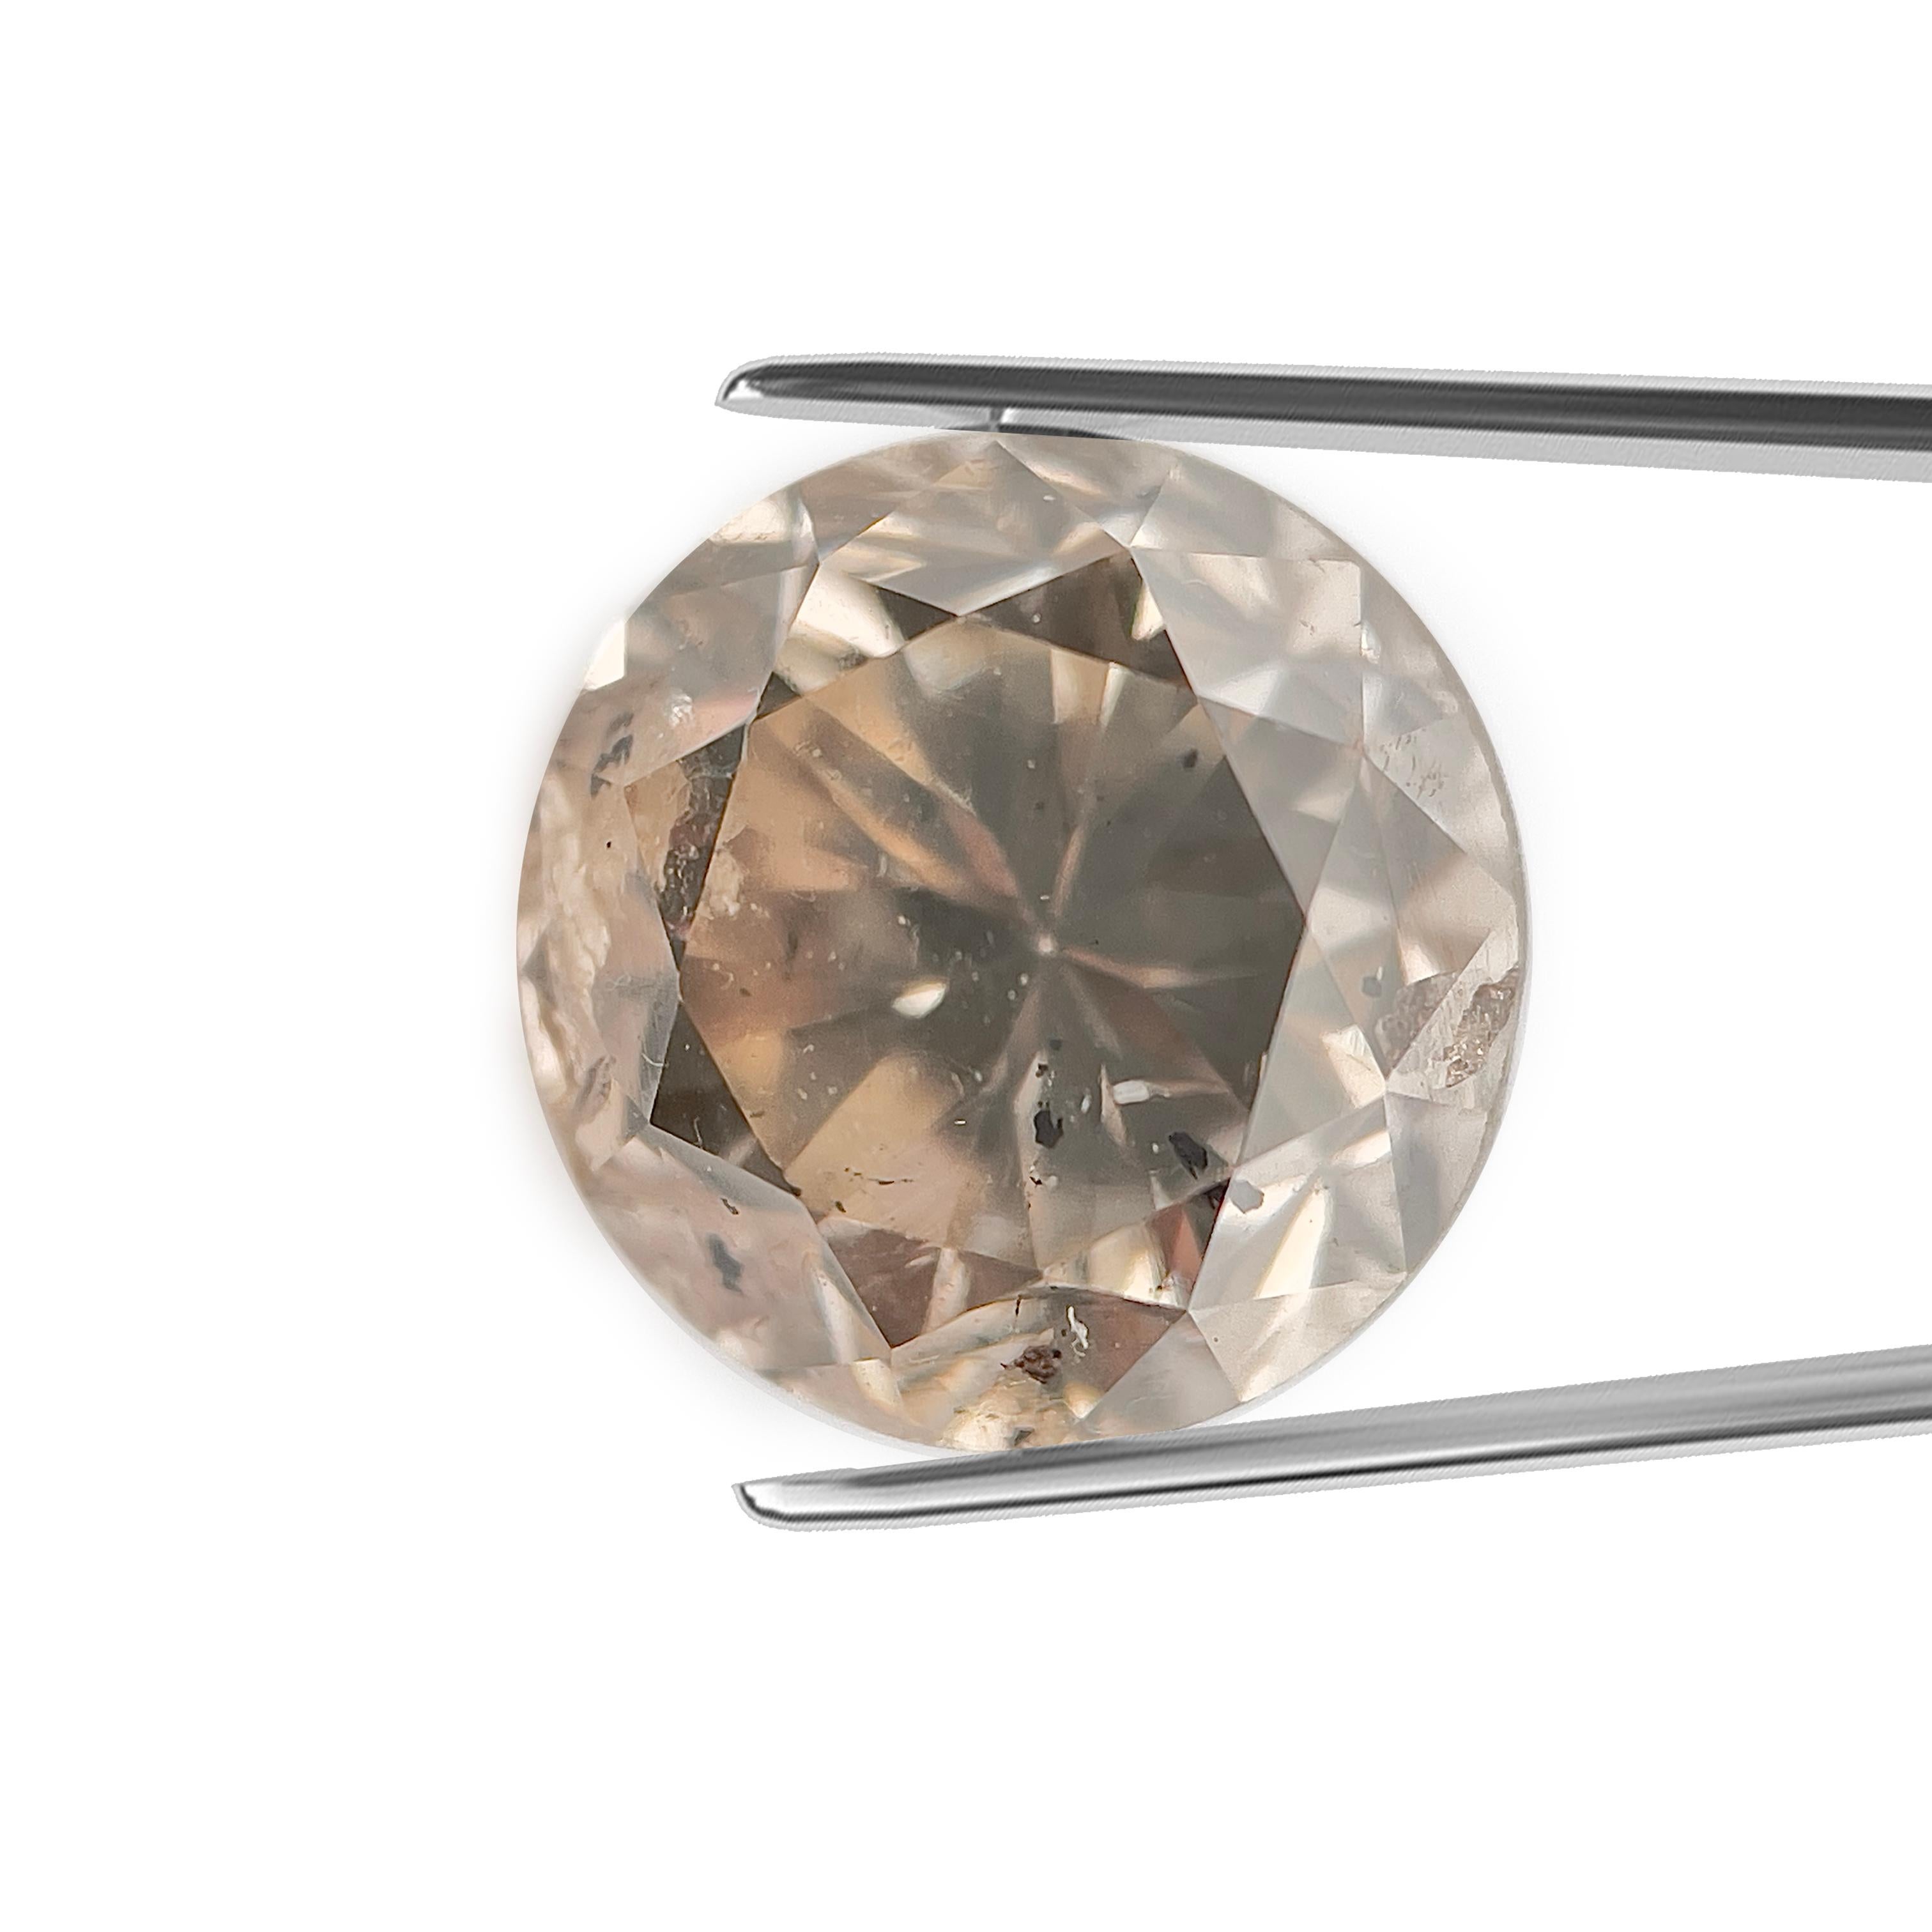 ARTIKELBEZEICHNUNG

ID #: 56812
Form des Steins: Rundschliff Diamant
Gewicht des Diamanten: 1,76 CT
Klarheit: SI3
Farbe: M 
Abmessungen: 7,03 x 7,05 x 5,16 mm
Unser Preis: $4045.00
Schätzungspreis: $6070.00


Diese echten Diamanten werden von